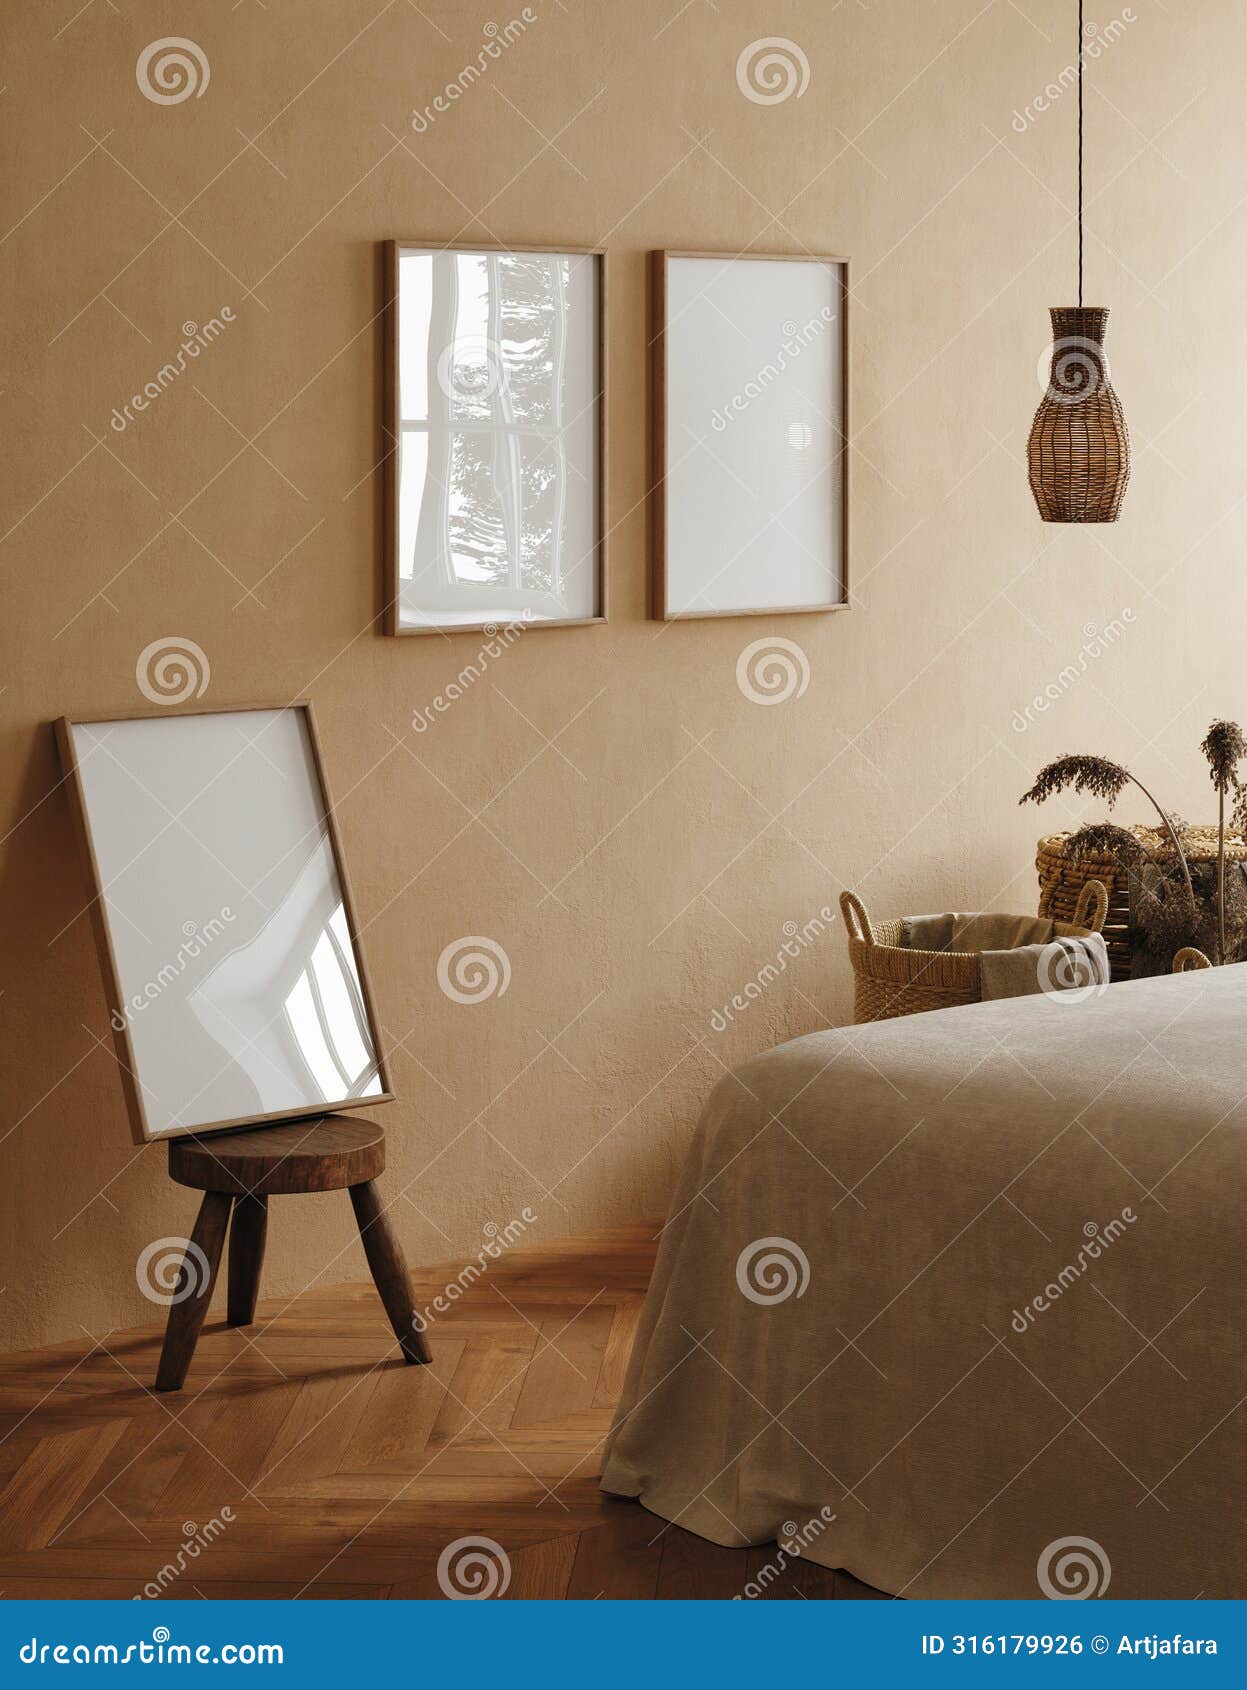 frame mockup in cozy beige japandi bedroom interior